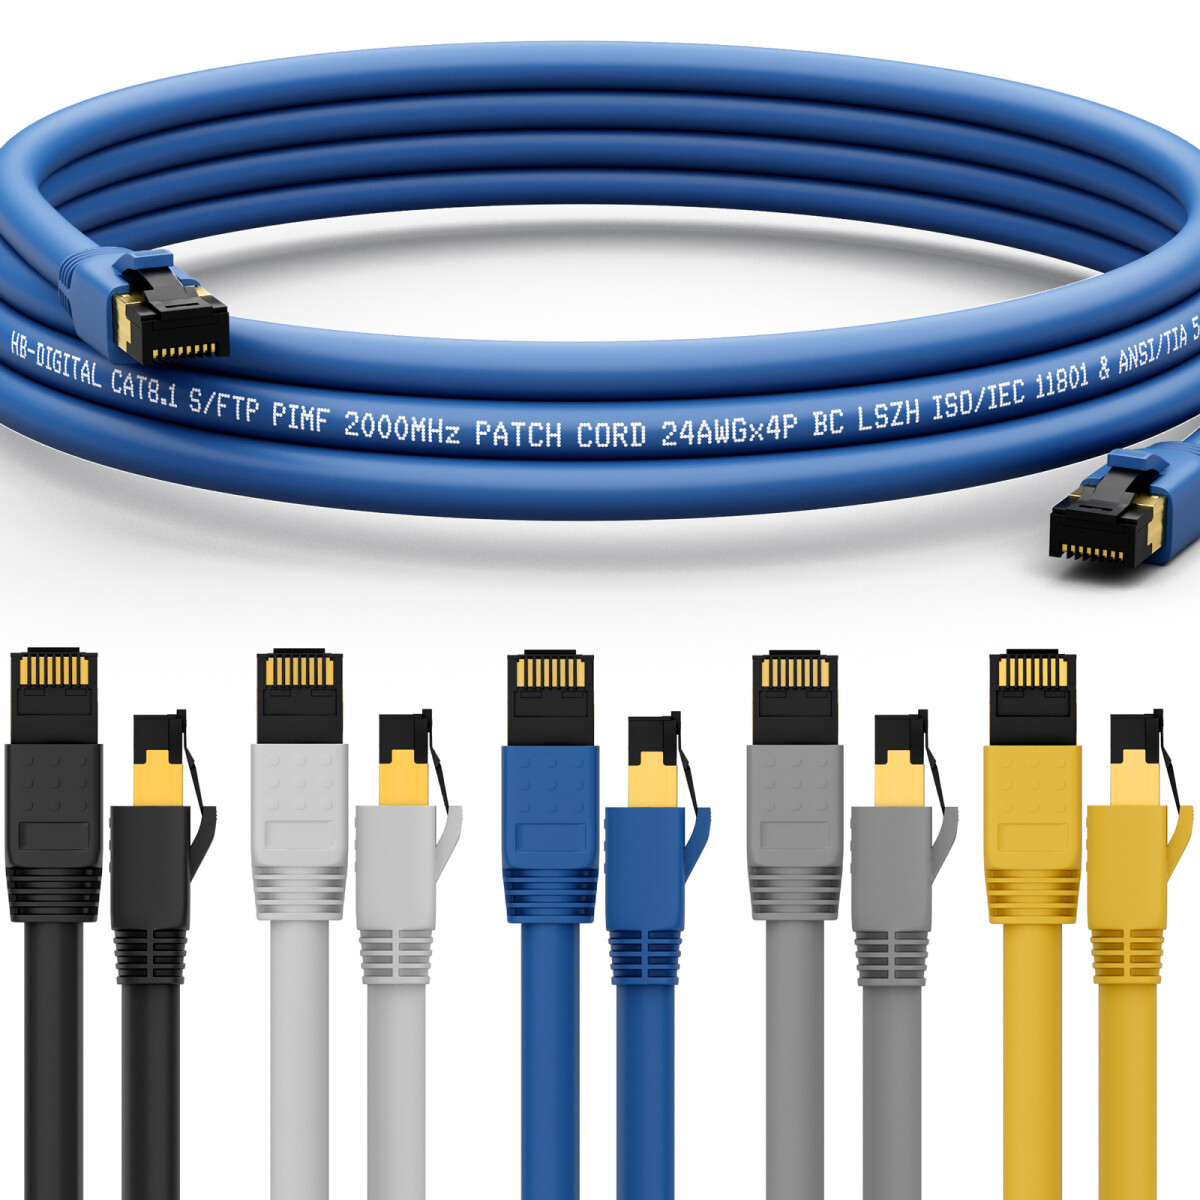 Internetverbindung, RJ45 Stecker, LAN Kabel, Patchkabel, Ethernet